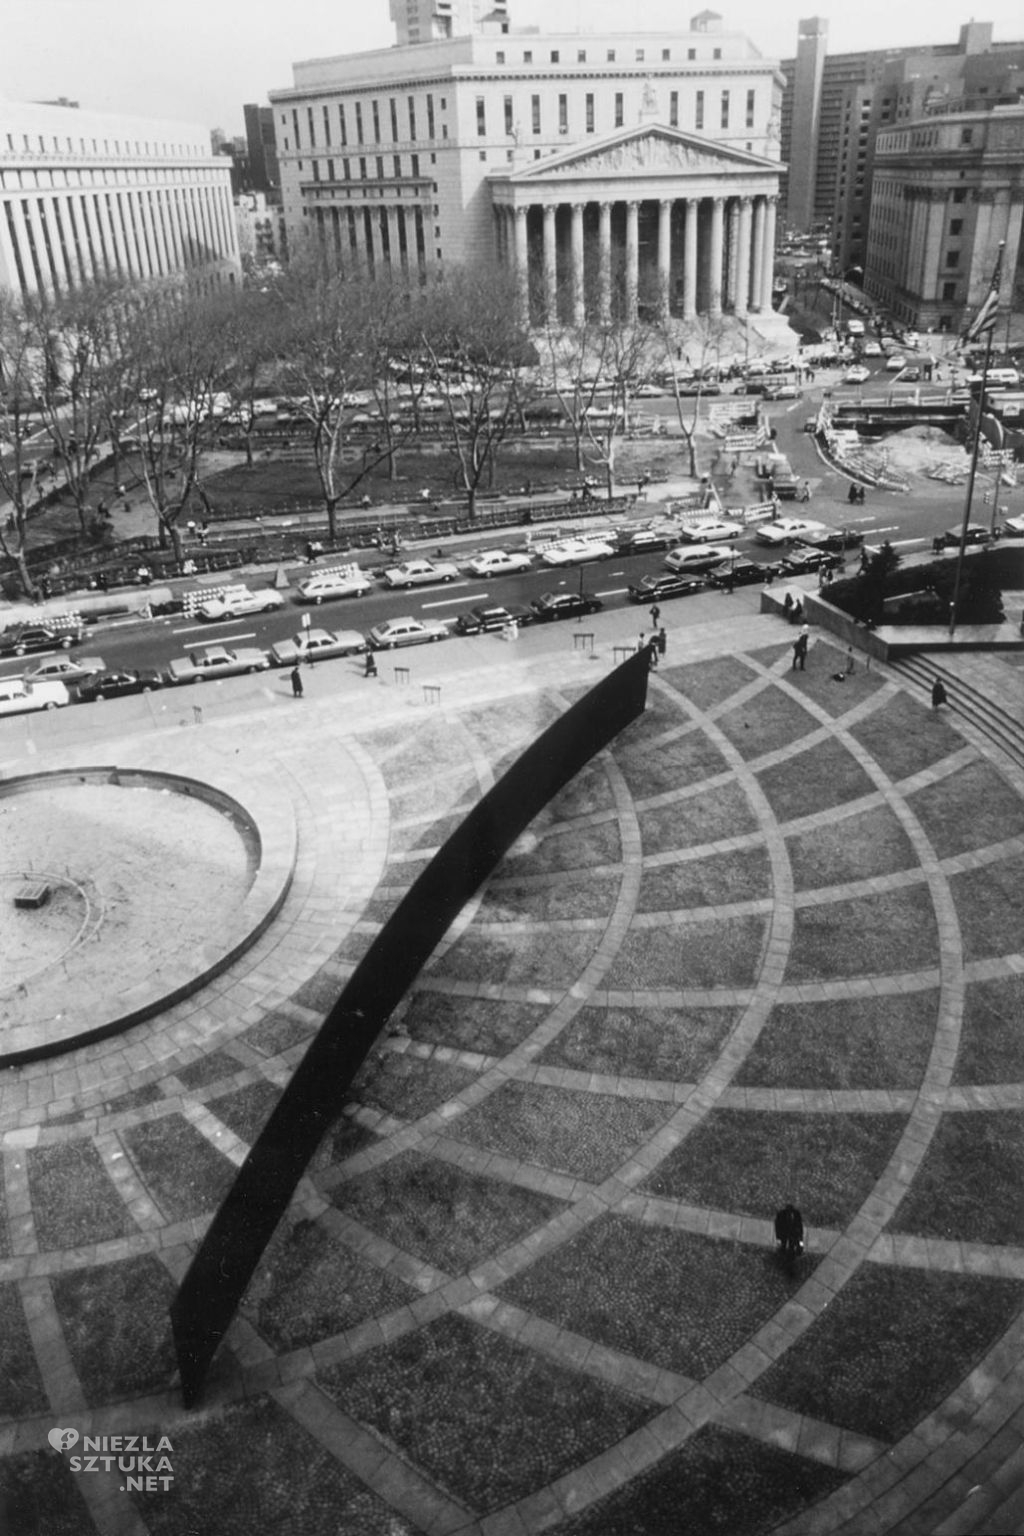 Richard Serra Tilted Arc